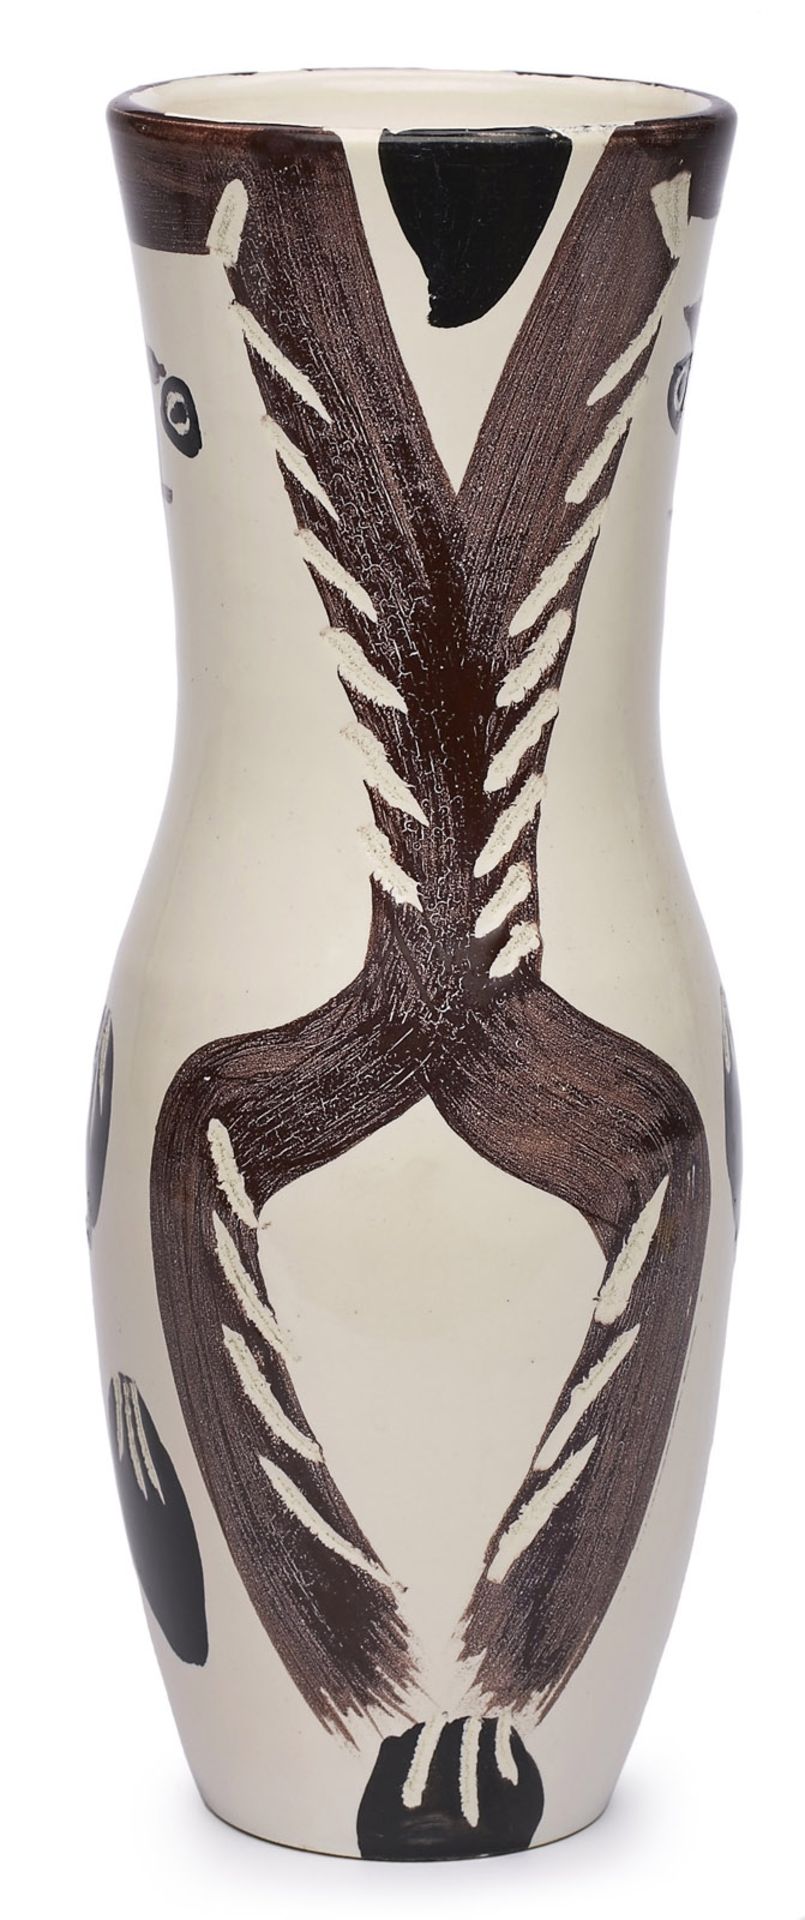 Vase "Chouette", Madoura Edition Picasso, Frankreich 1952. - Bild 2 aus 3